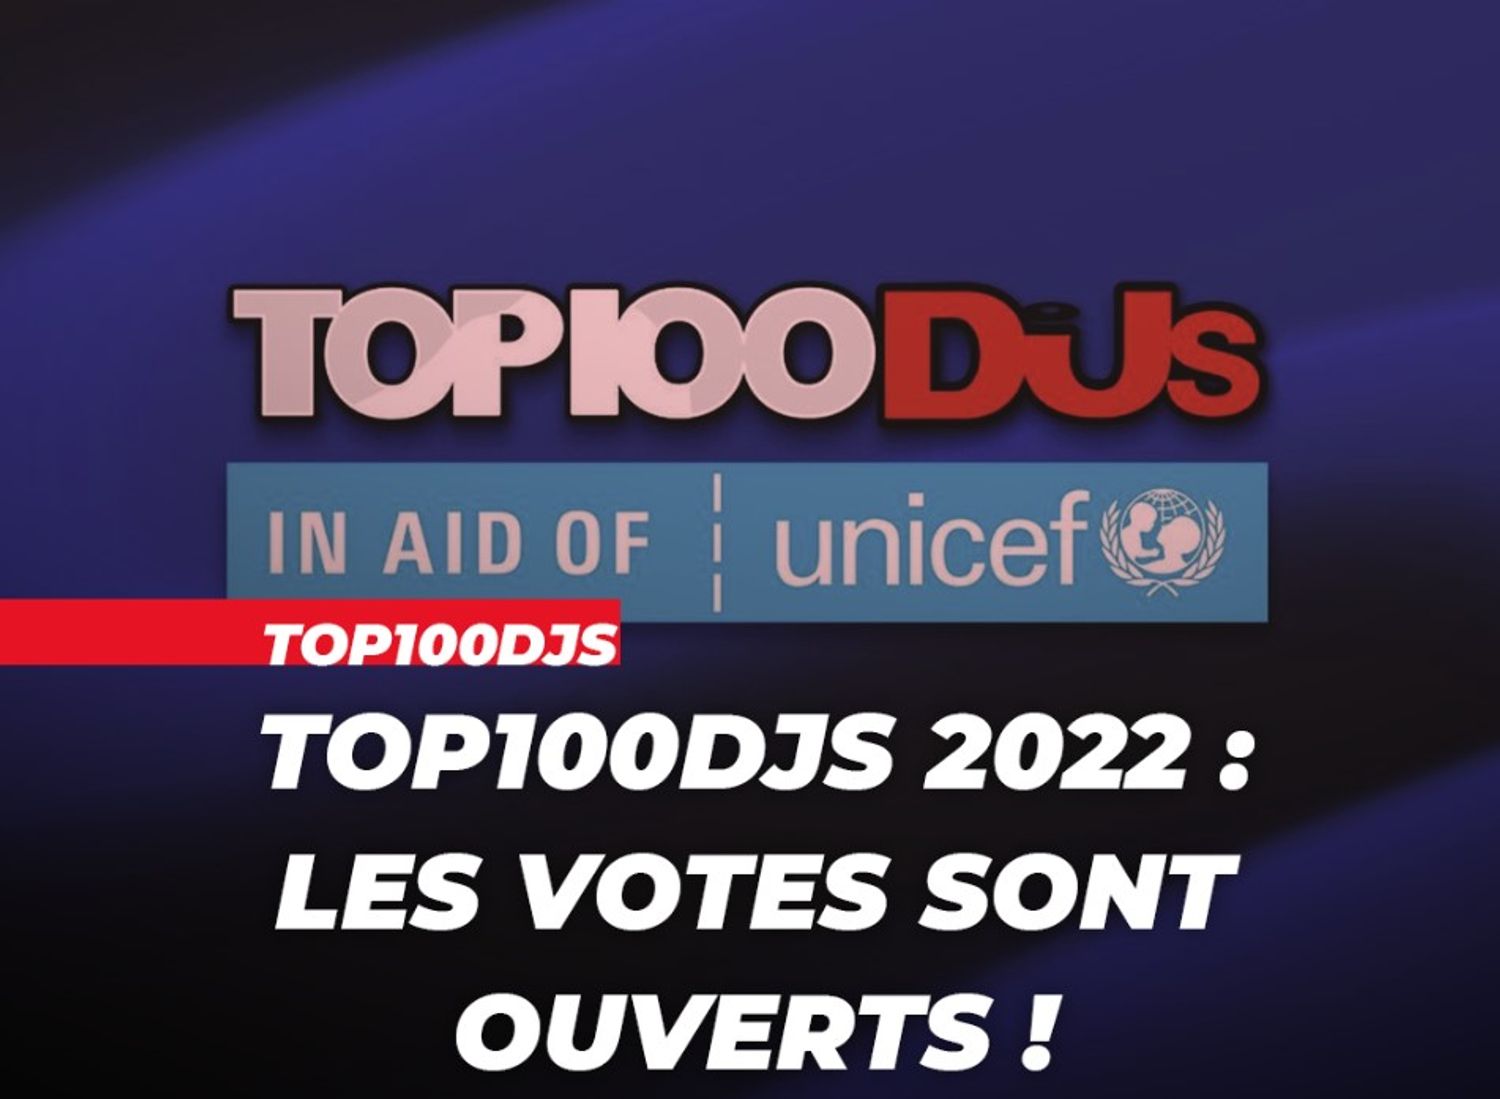 top 100 DJs 2022